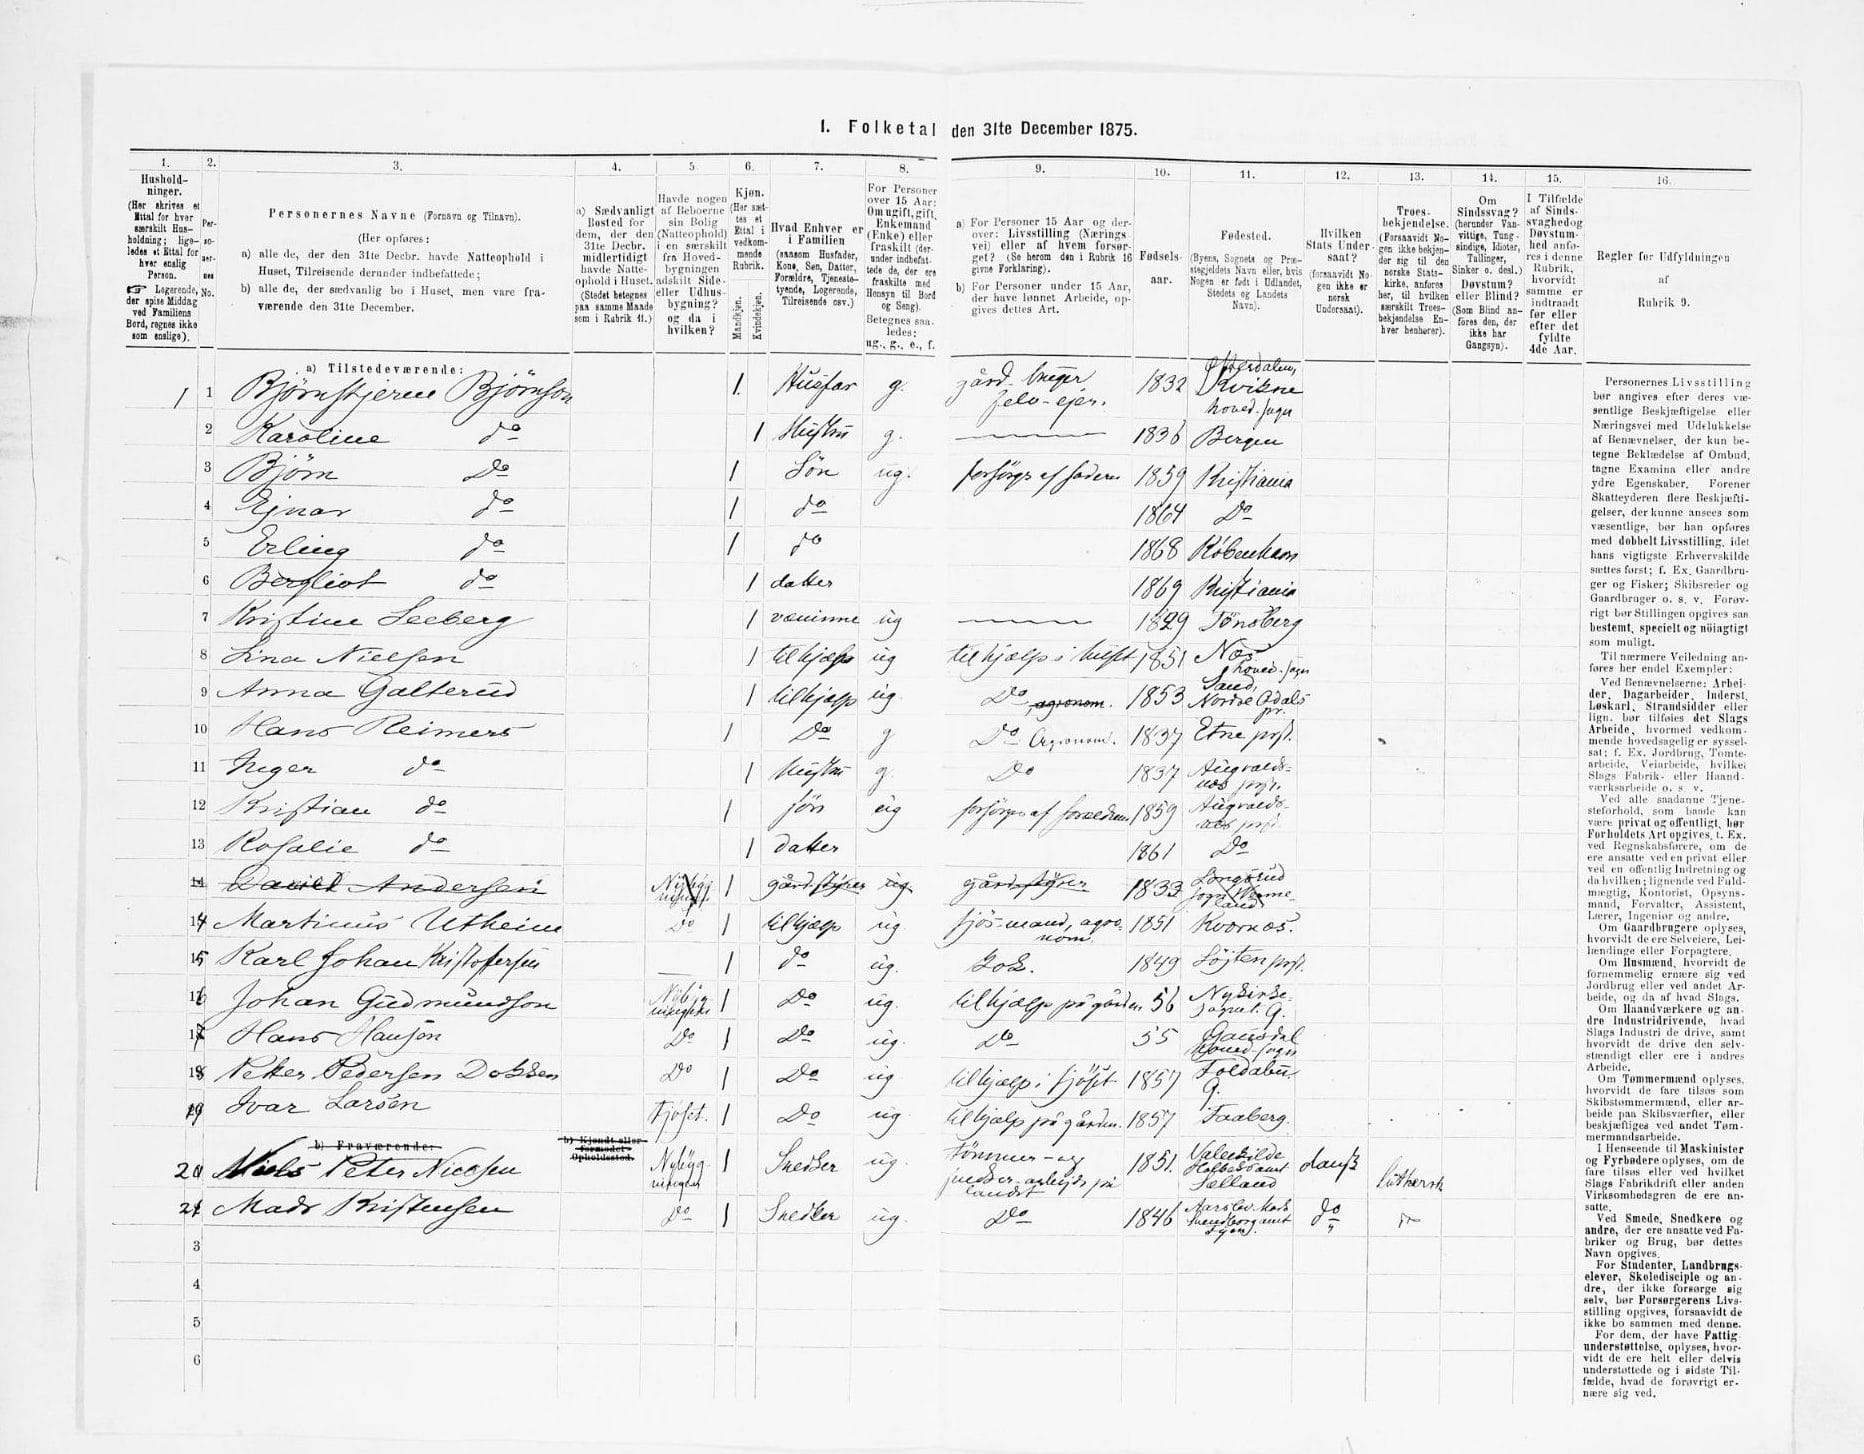 1875 census record of Bjørnstjerne Bjørnson [MyHeritage 1875 Norway Census Records]